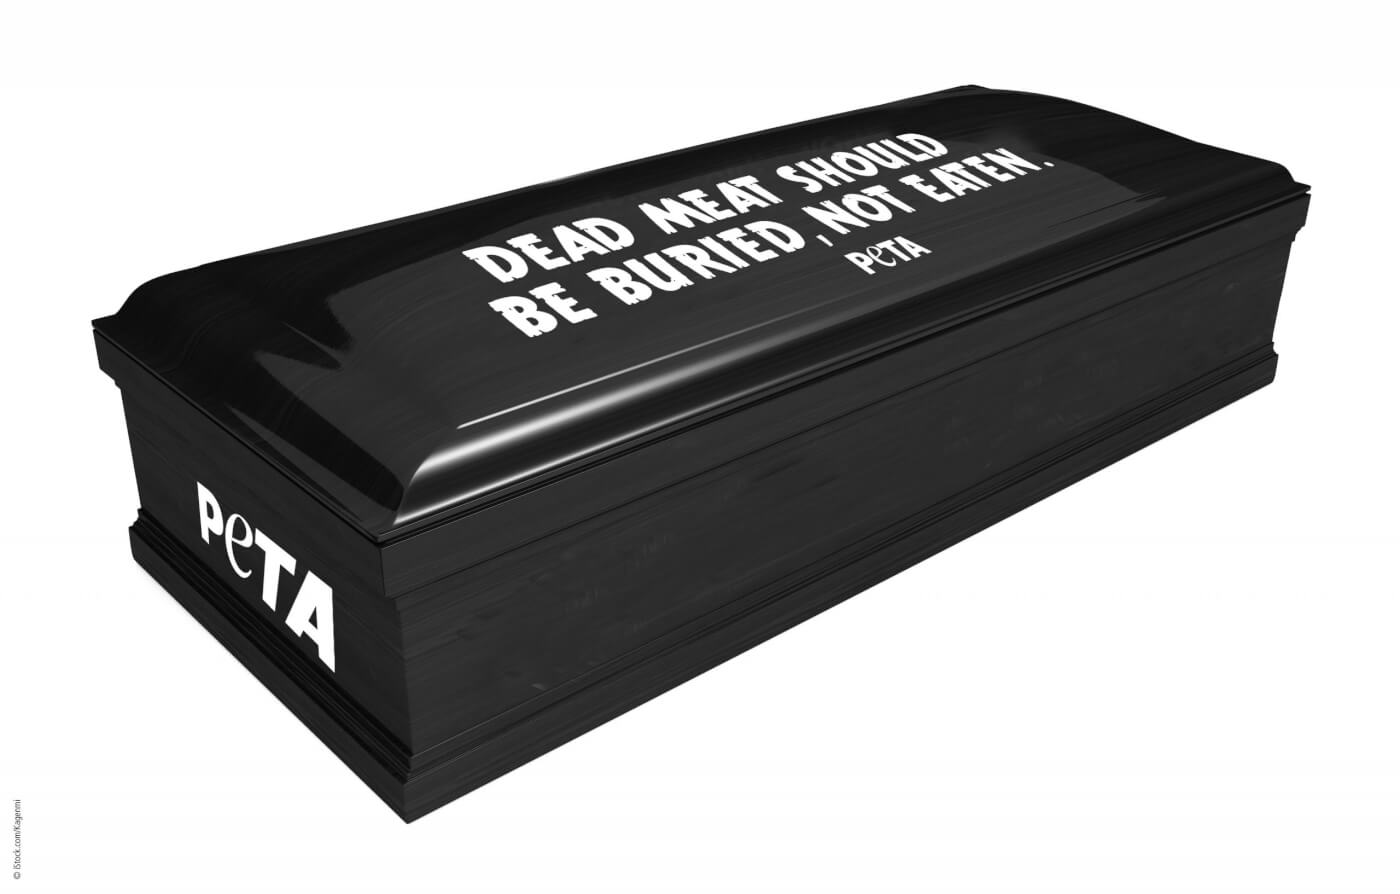 PETA Coffin "Dead Meat Should Be Buried, Not Eaten"